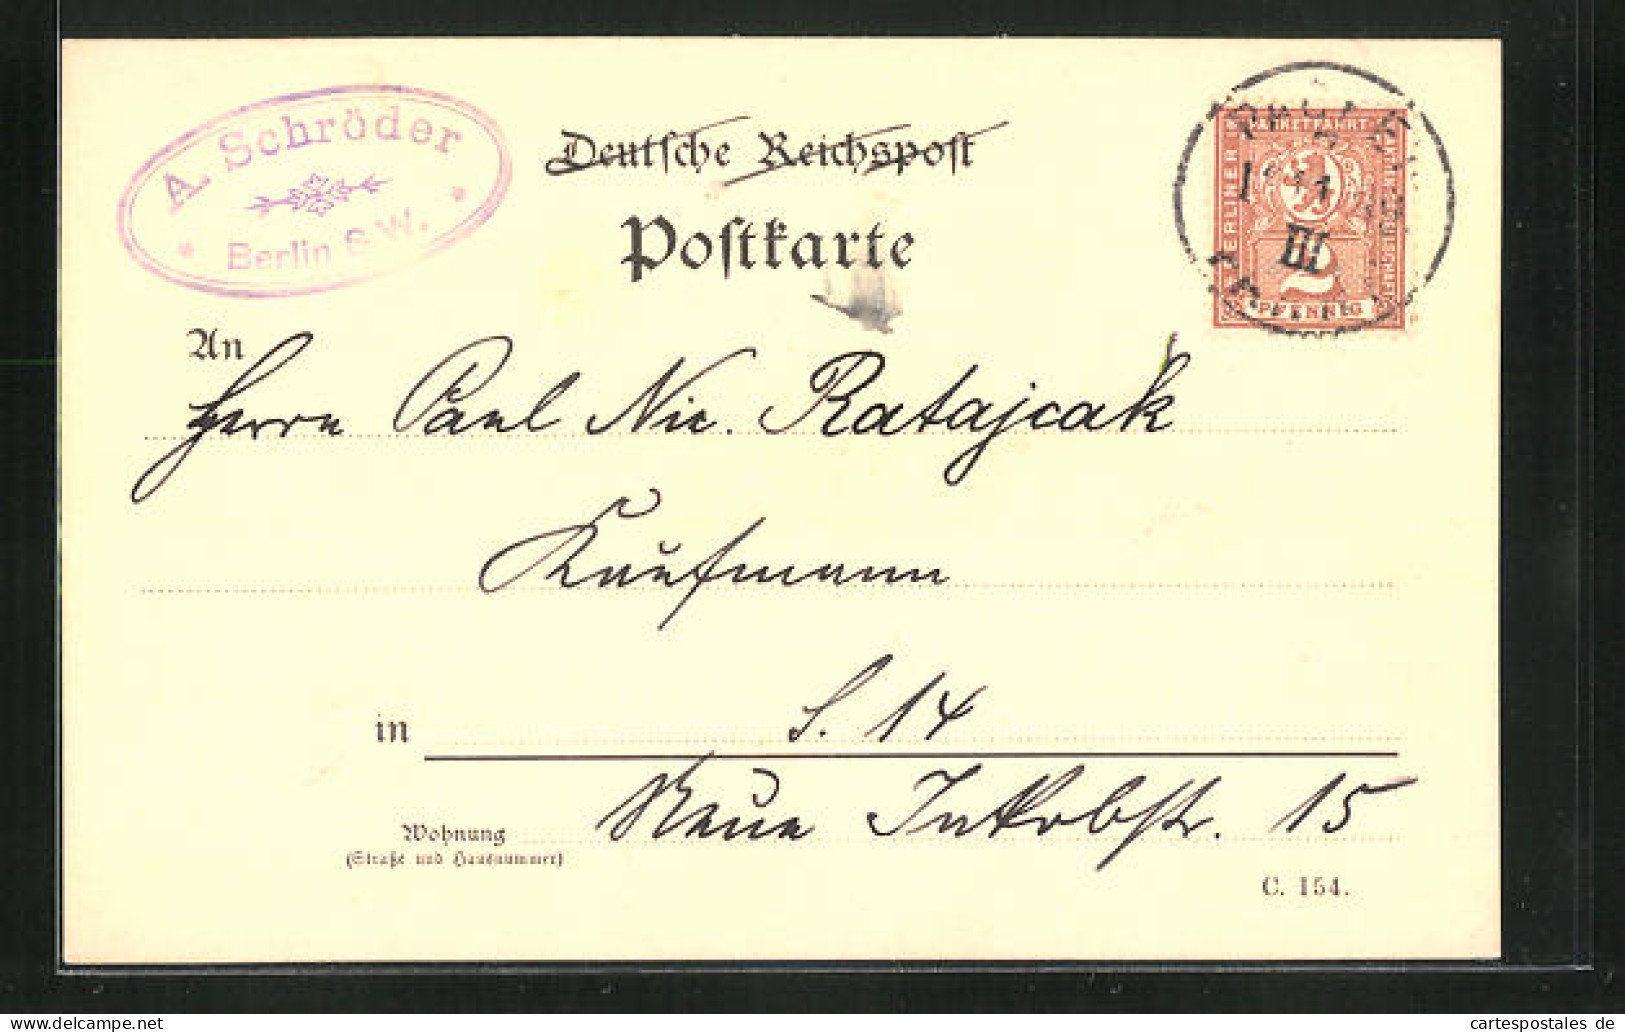 AK Private Stadtpost Packet Fahrt Berlin, Stempel Firma A. Schröder  - Briefmarken (Abbildungen)